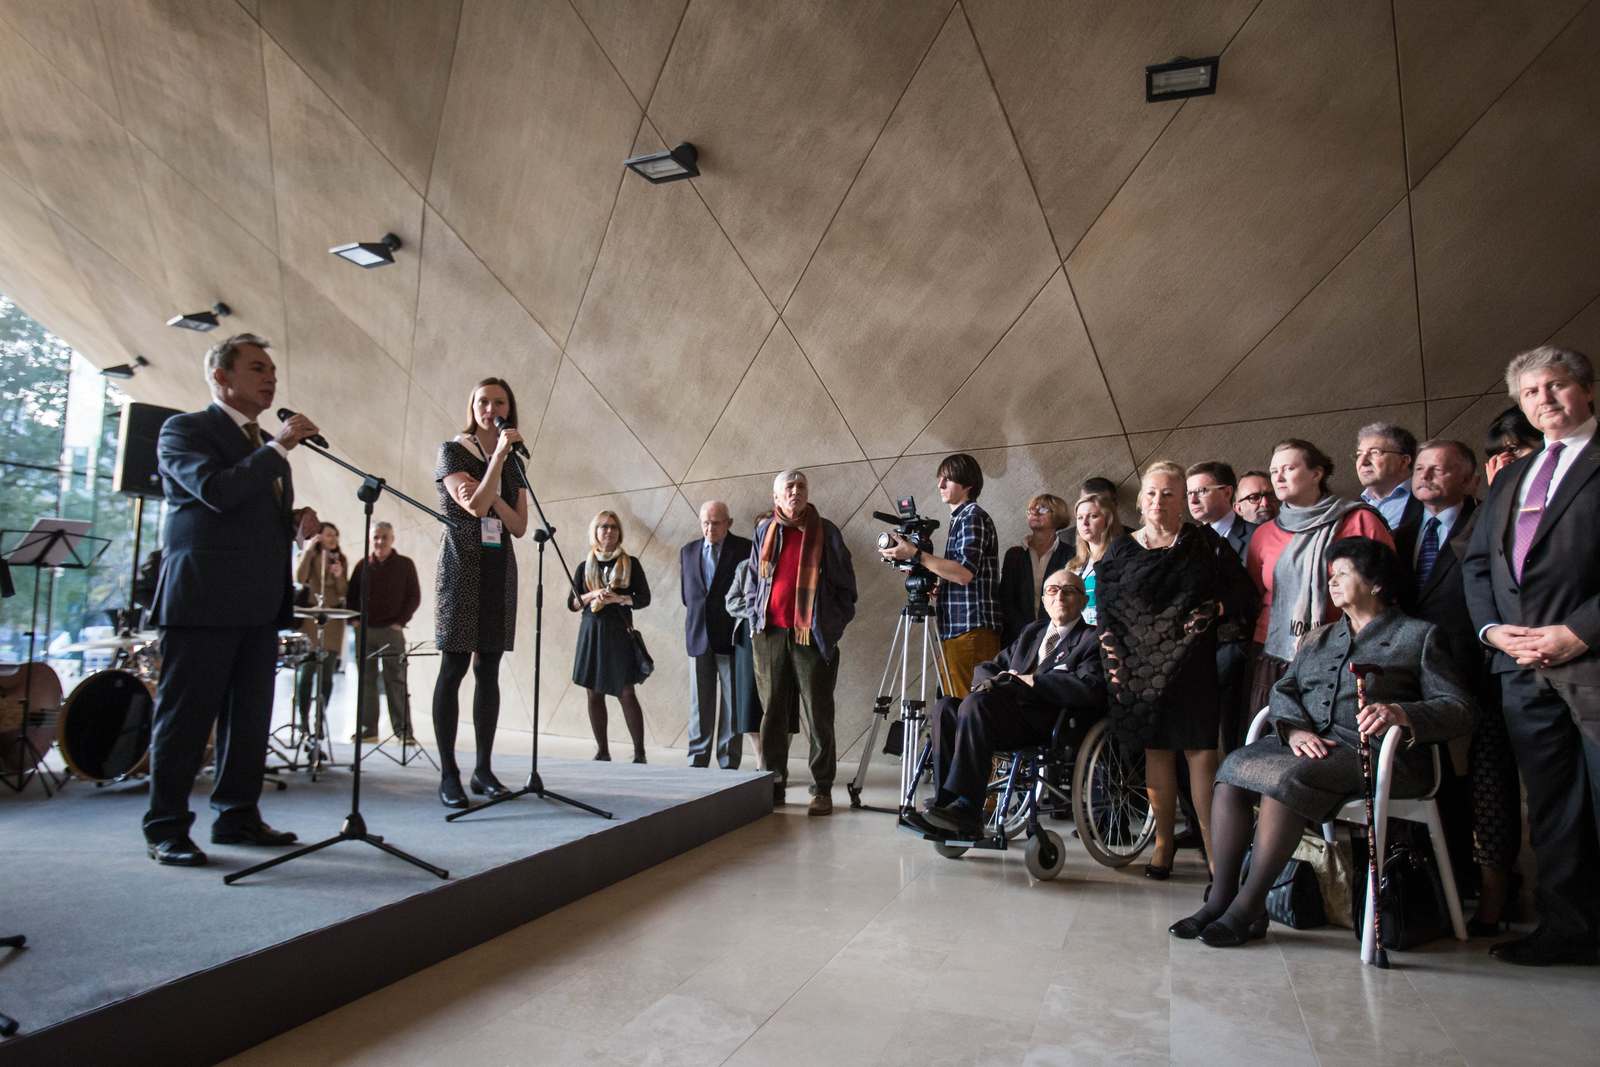 Goście w holu Muzeum POLIN słuchają mężczyzny przemawiającego ze sceny.